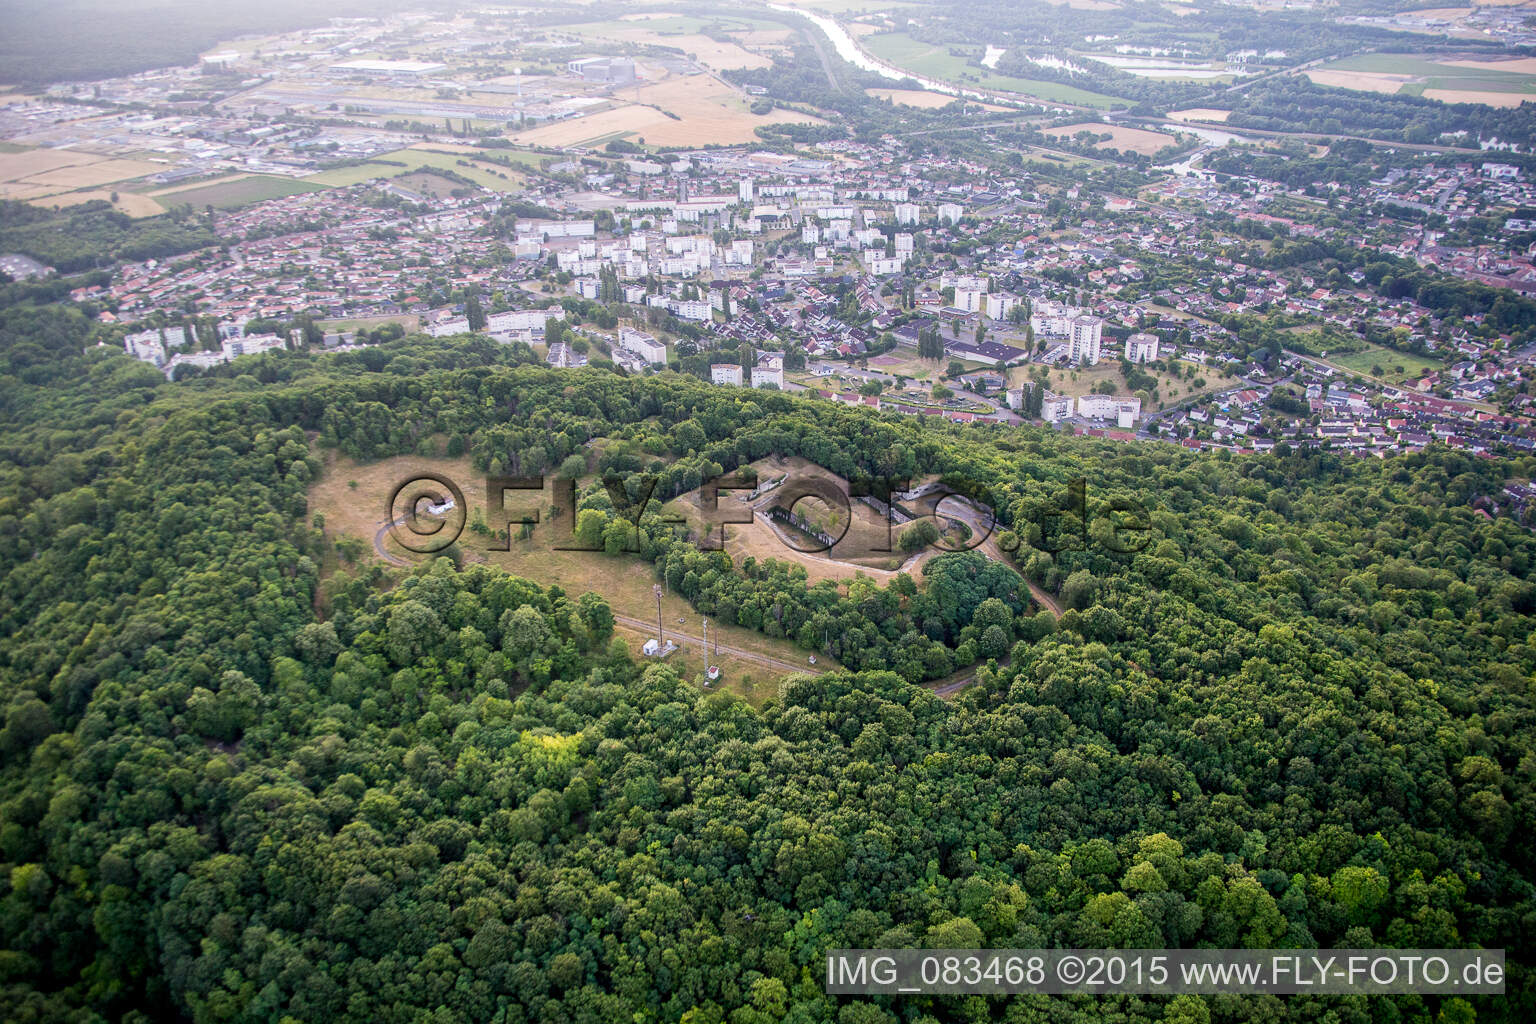 Luftbild von Bunker/Fort N von Toul im Bundesland Meurthe-et-Moselle, Frankreich